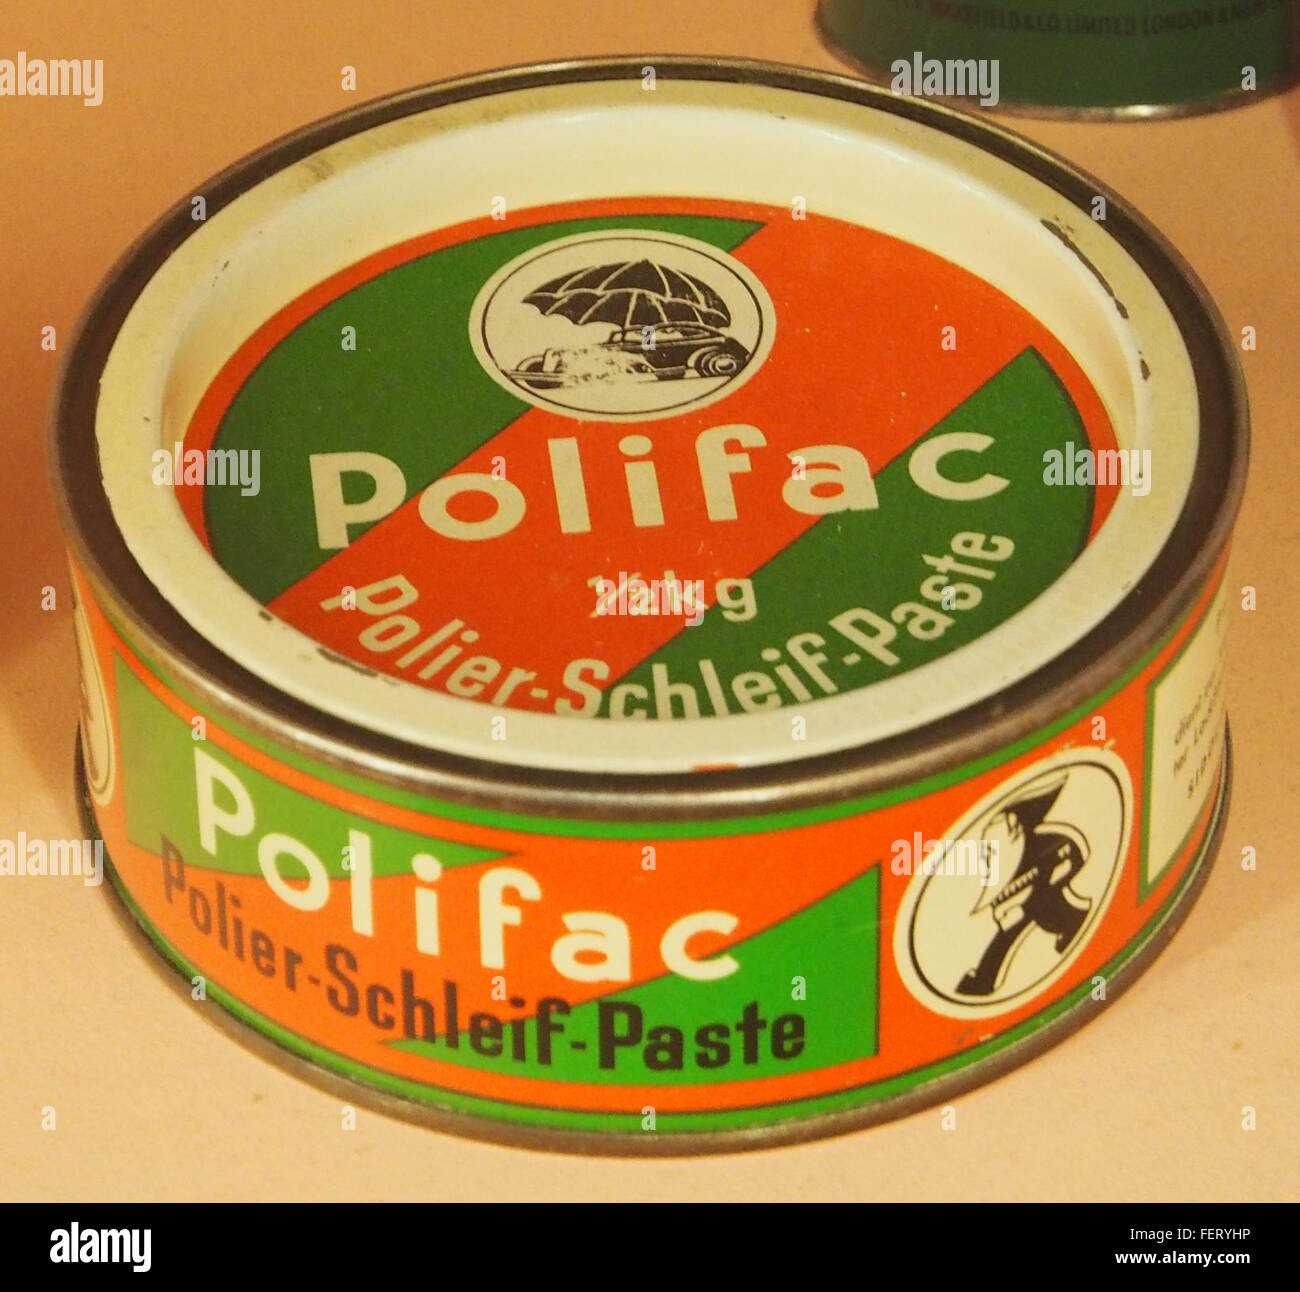 Polifac Polier-Schleif-Paste Stock Photo